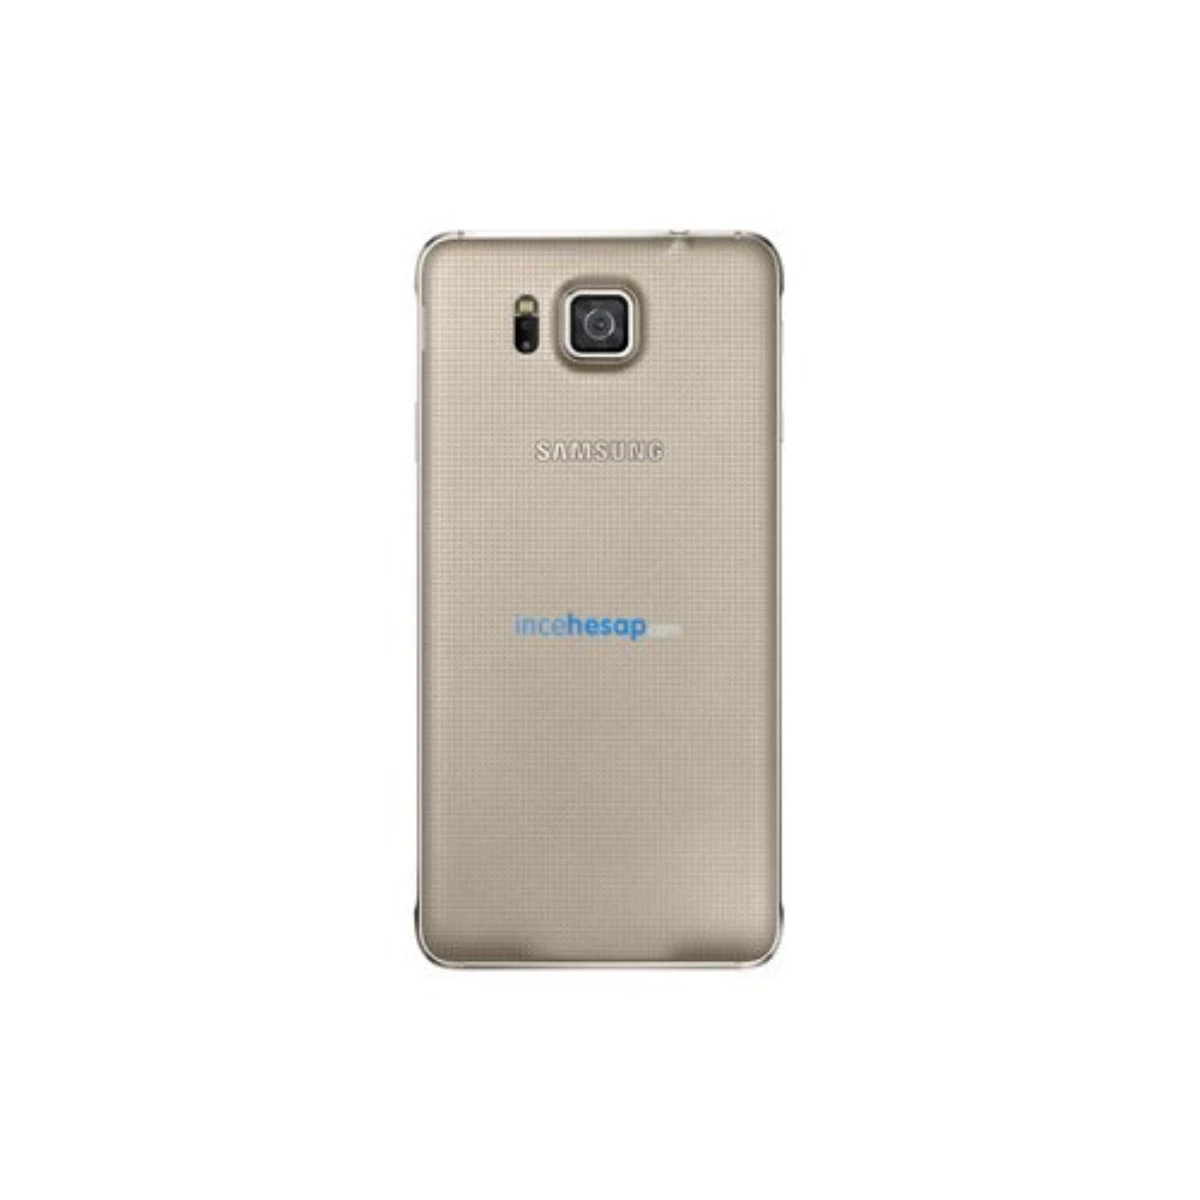 Samsung G850f Galaxy Alpha Gold Cep Telefonu